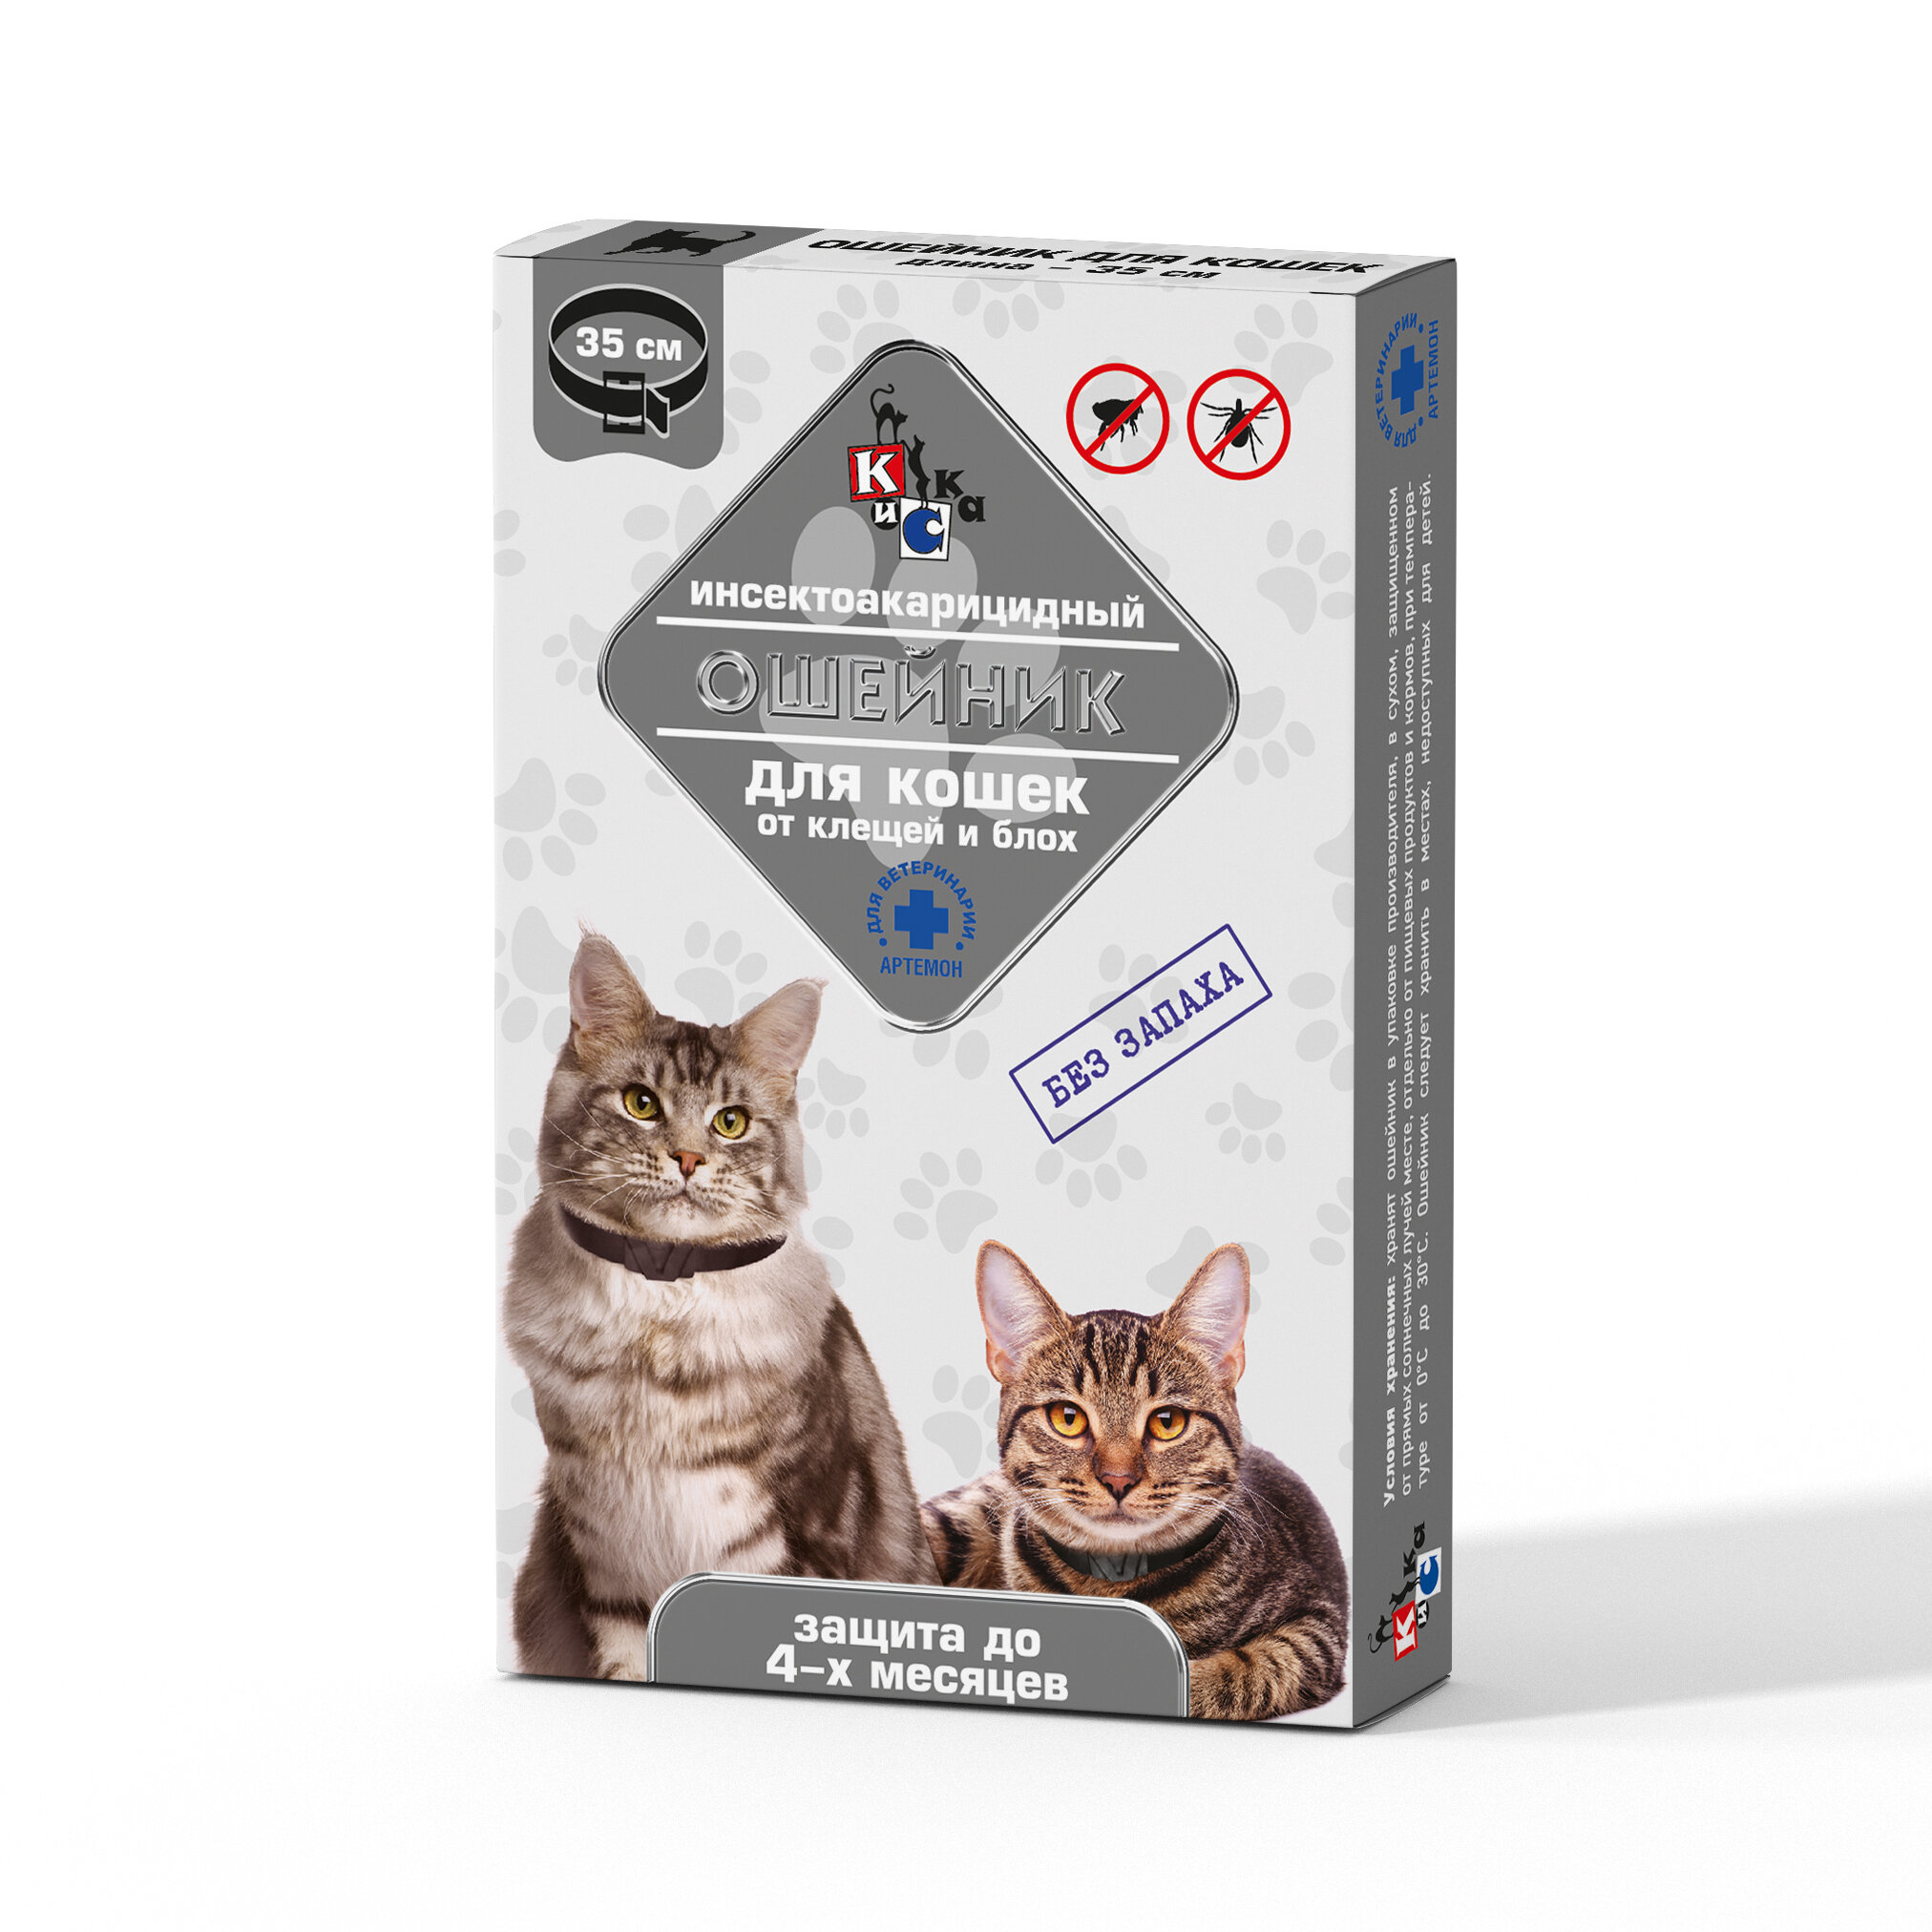 Ошейник КиСка для кошек от клещей и блох артемон 35 см 2544